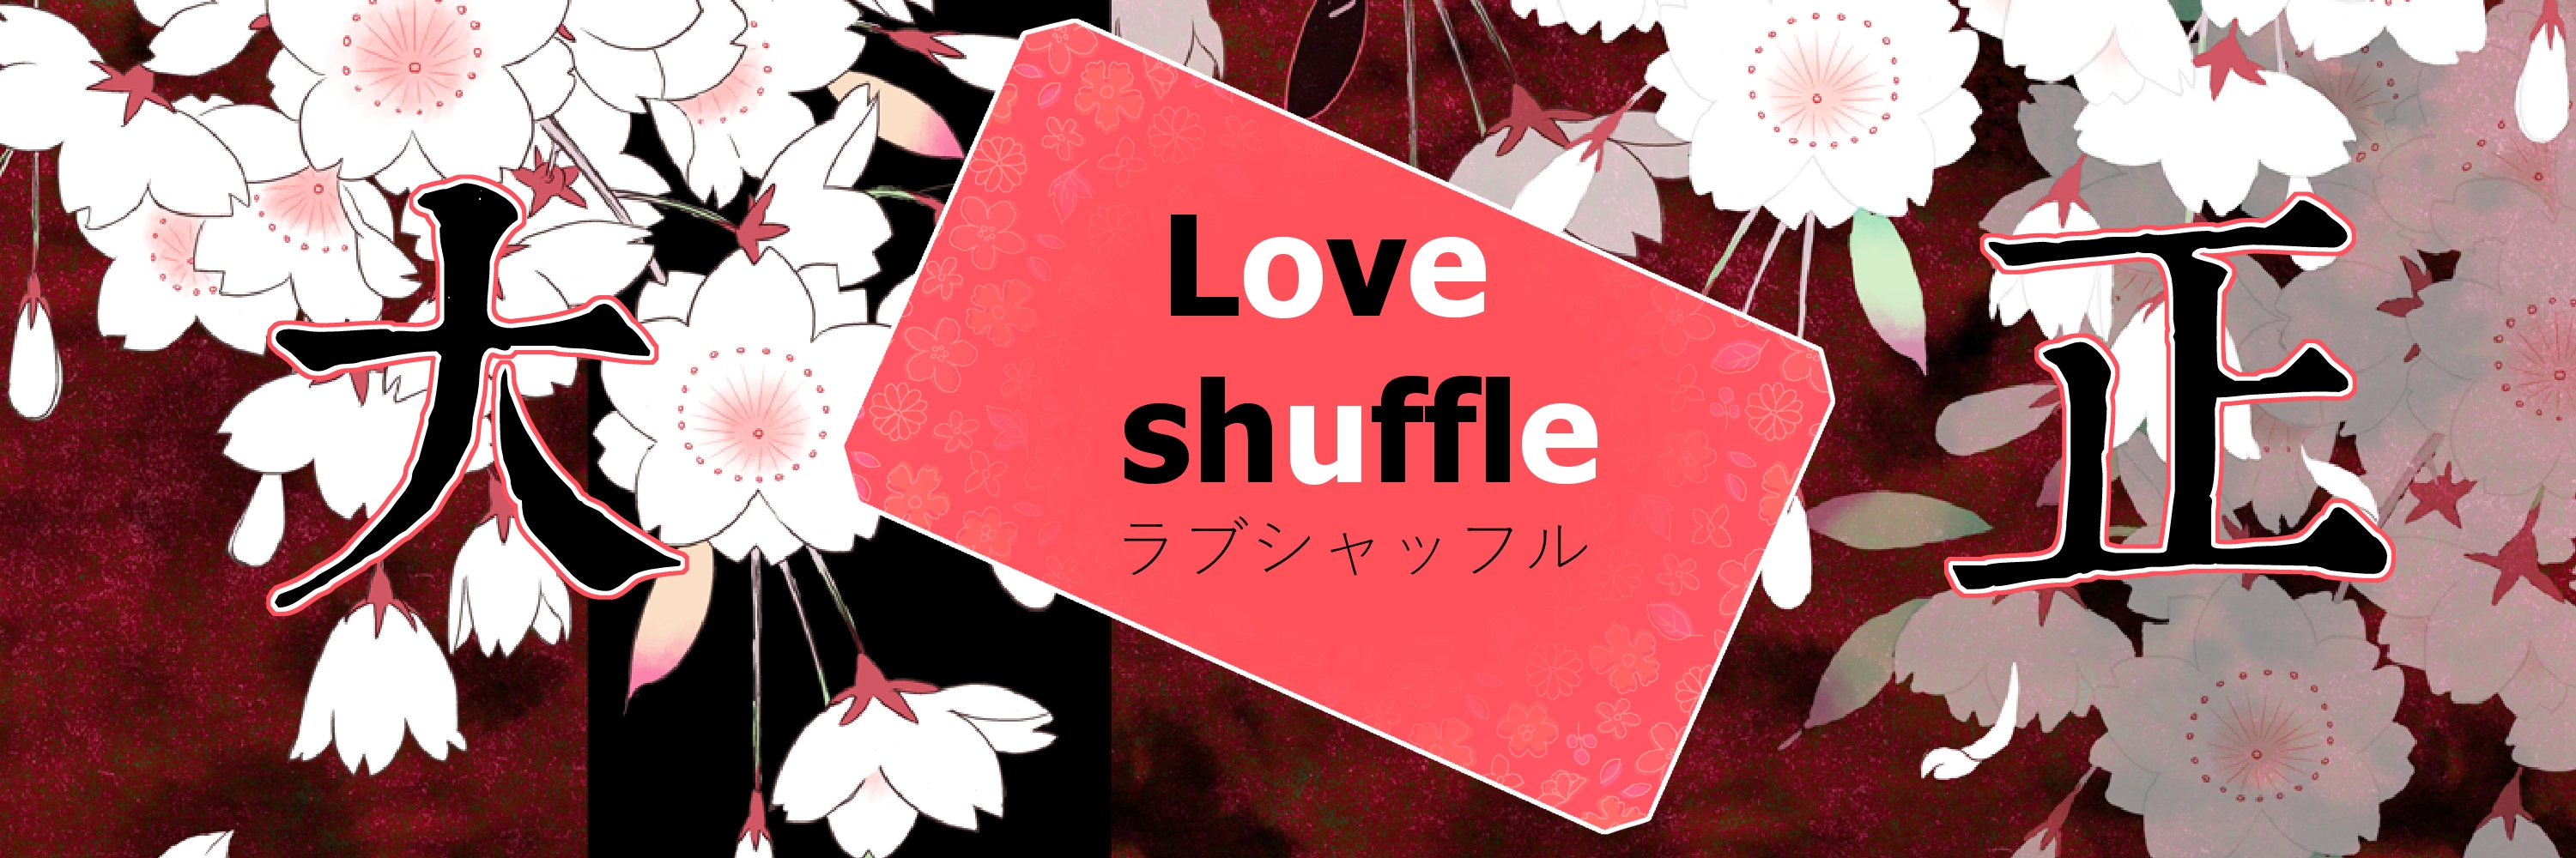 love shuffle~大正篇~